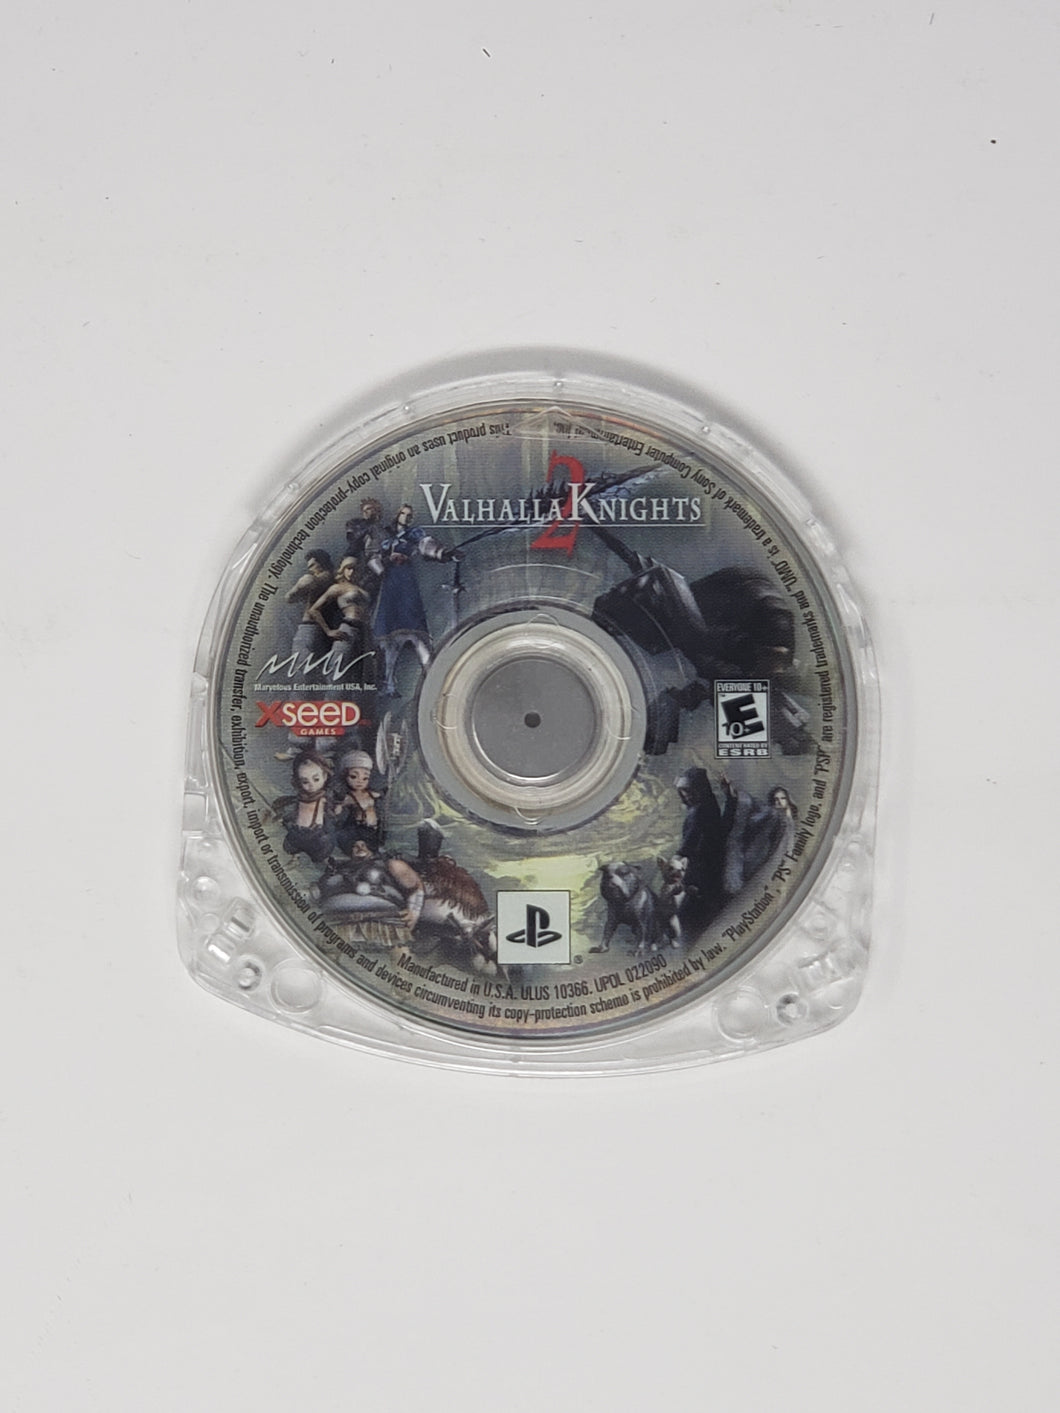 Valhalla Knights 2 - Sony PSP